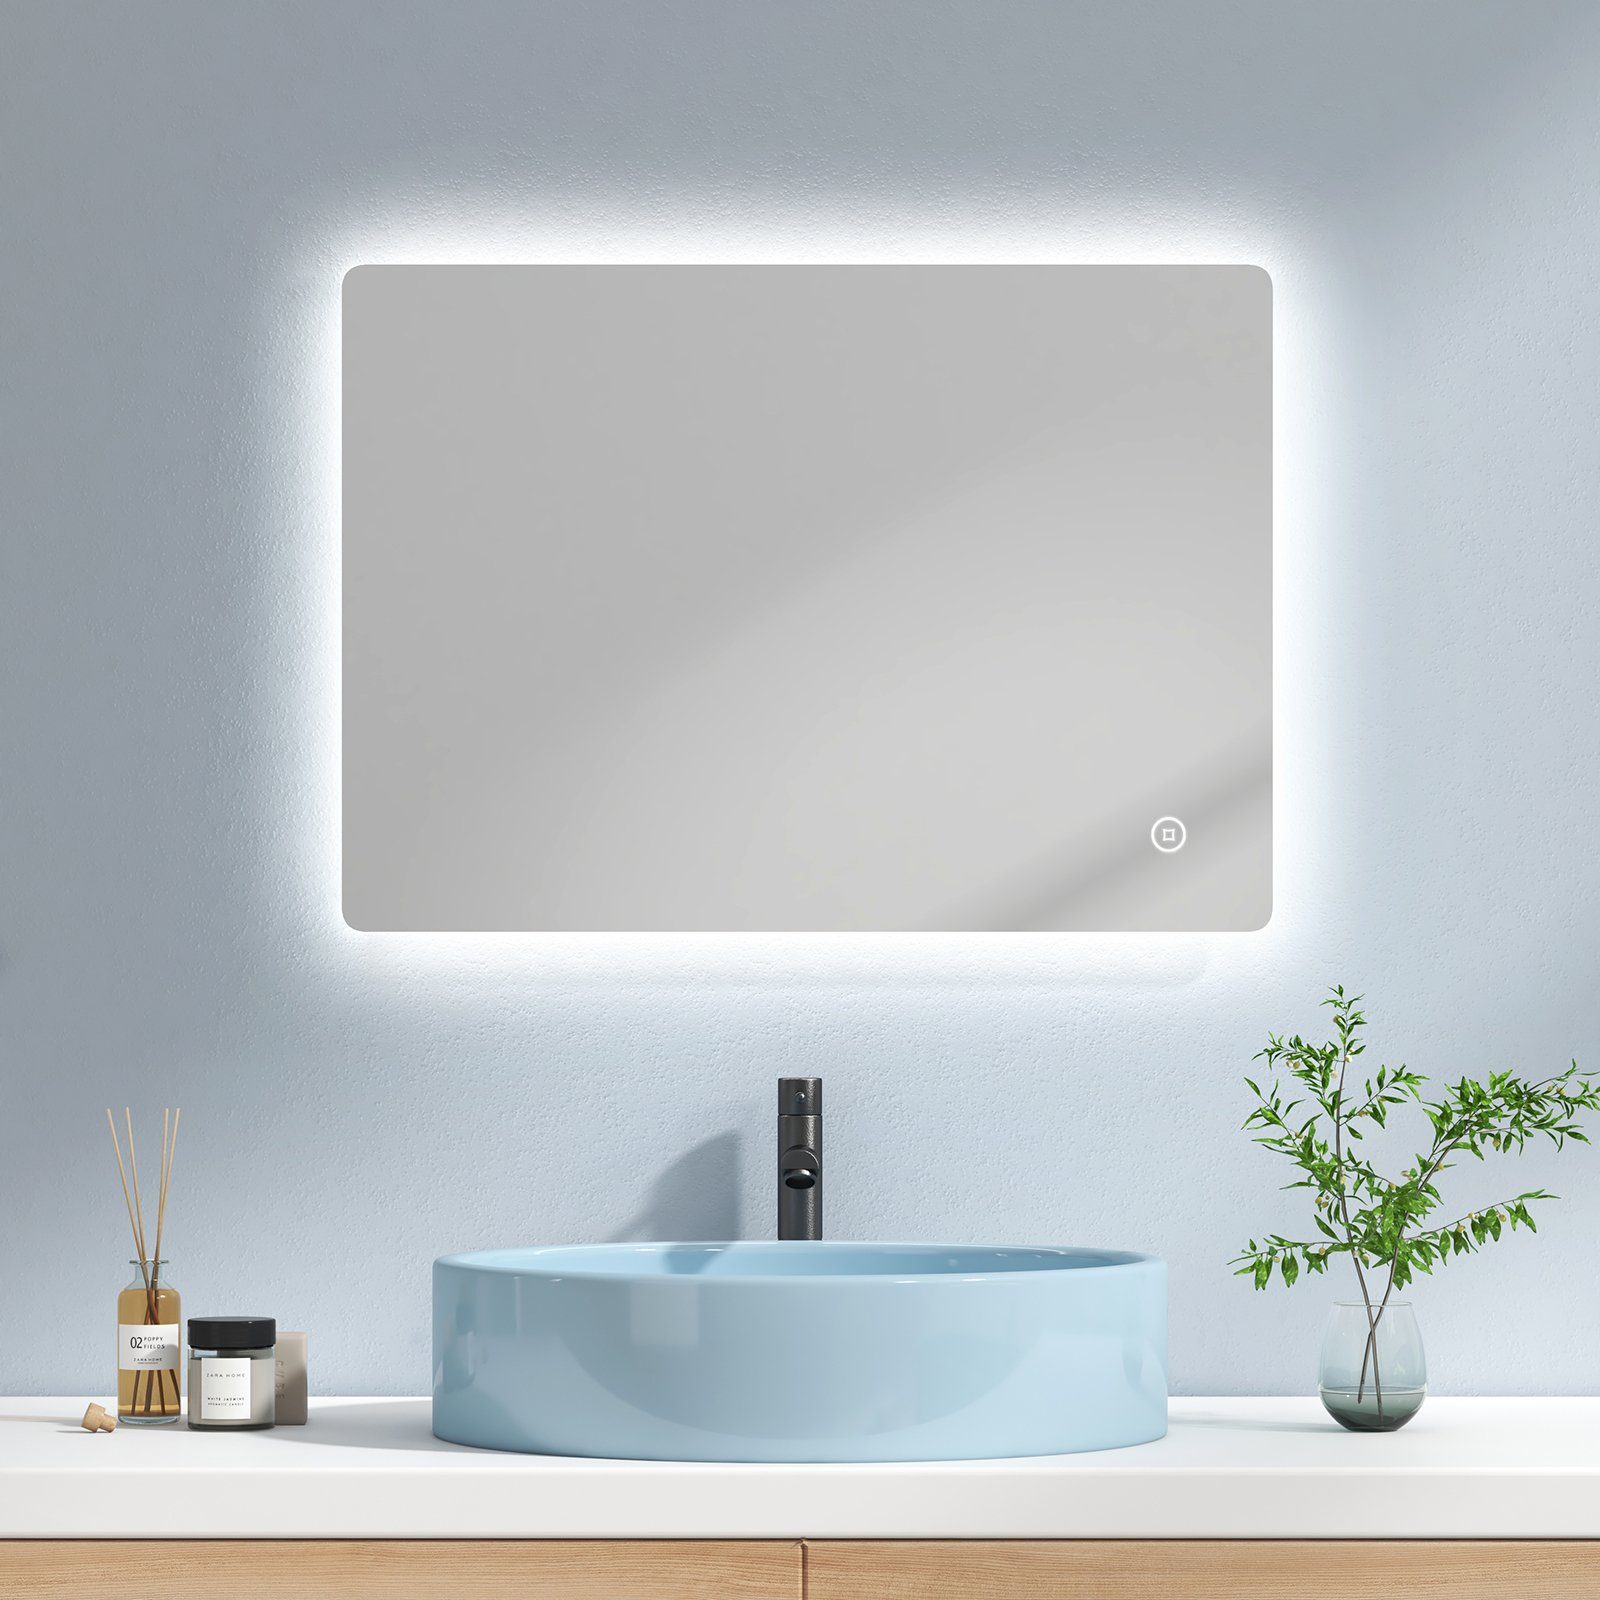 EMKE Badspiegel EMKE LED Badspiegel mit Antibeschlag Rahmenloser  Badezimmerspiegel, Wandspiegel mit Beleuchtung und Touch-Schalter